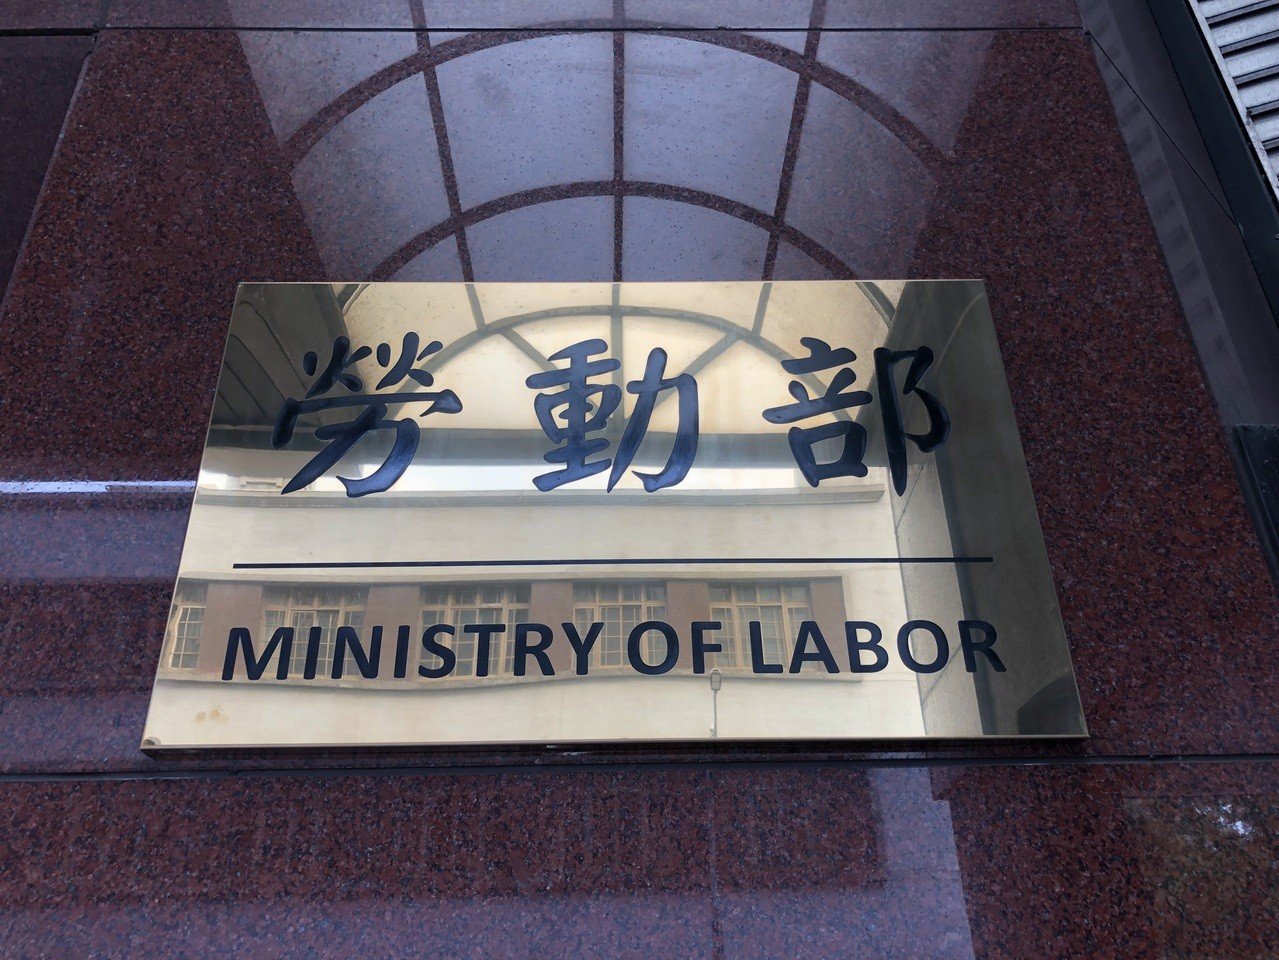 Kementerian Ketenagakerjaan mengingatkan rakyat terhadap hukum seputar kerja lembur. Sumber: Kementerian Ketenagakerjaan 